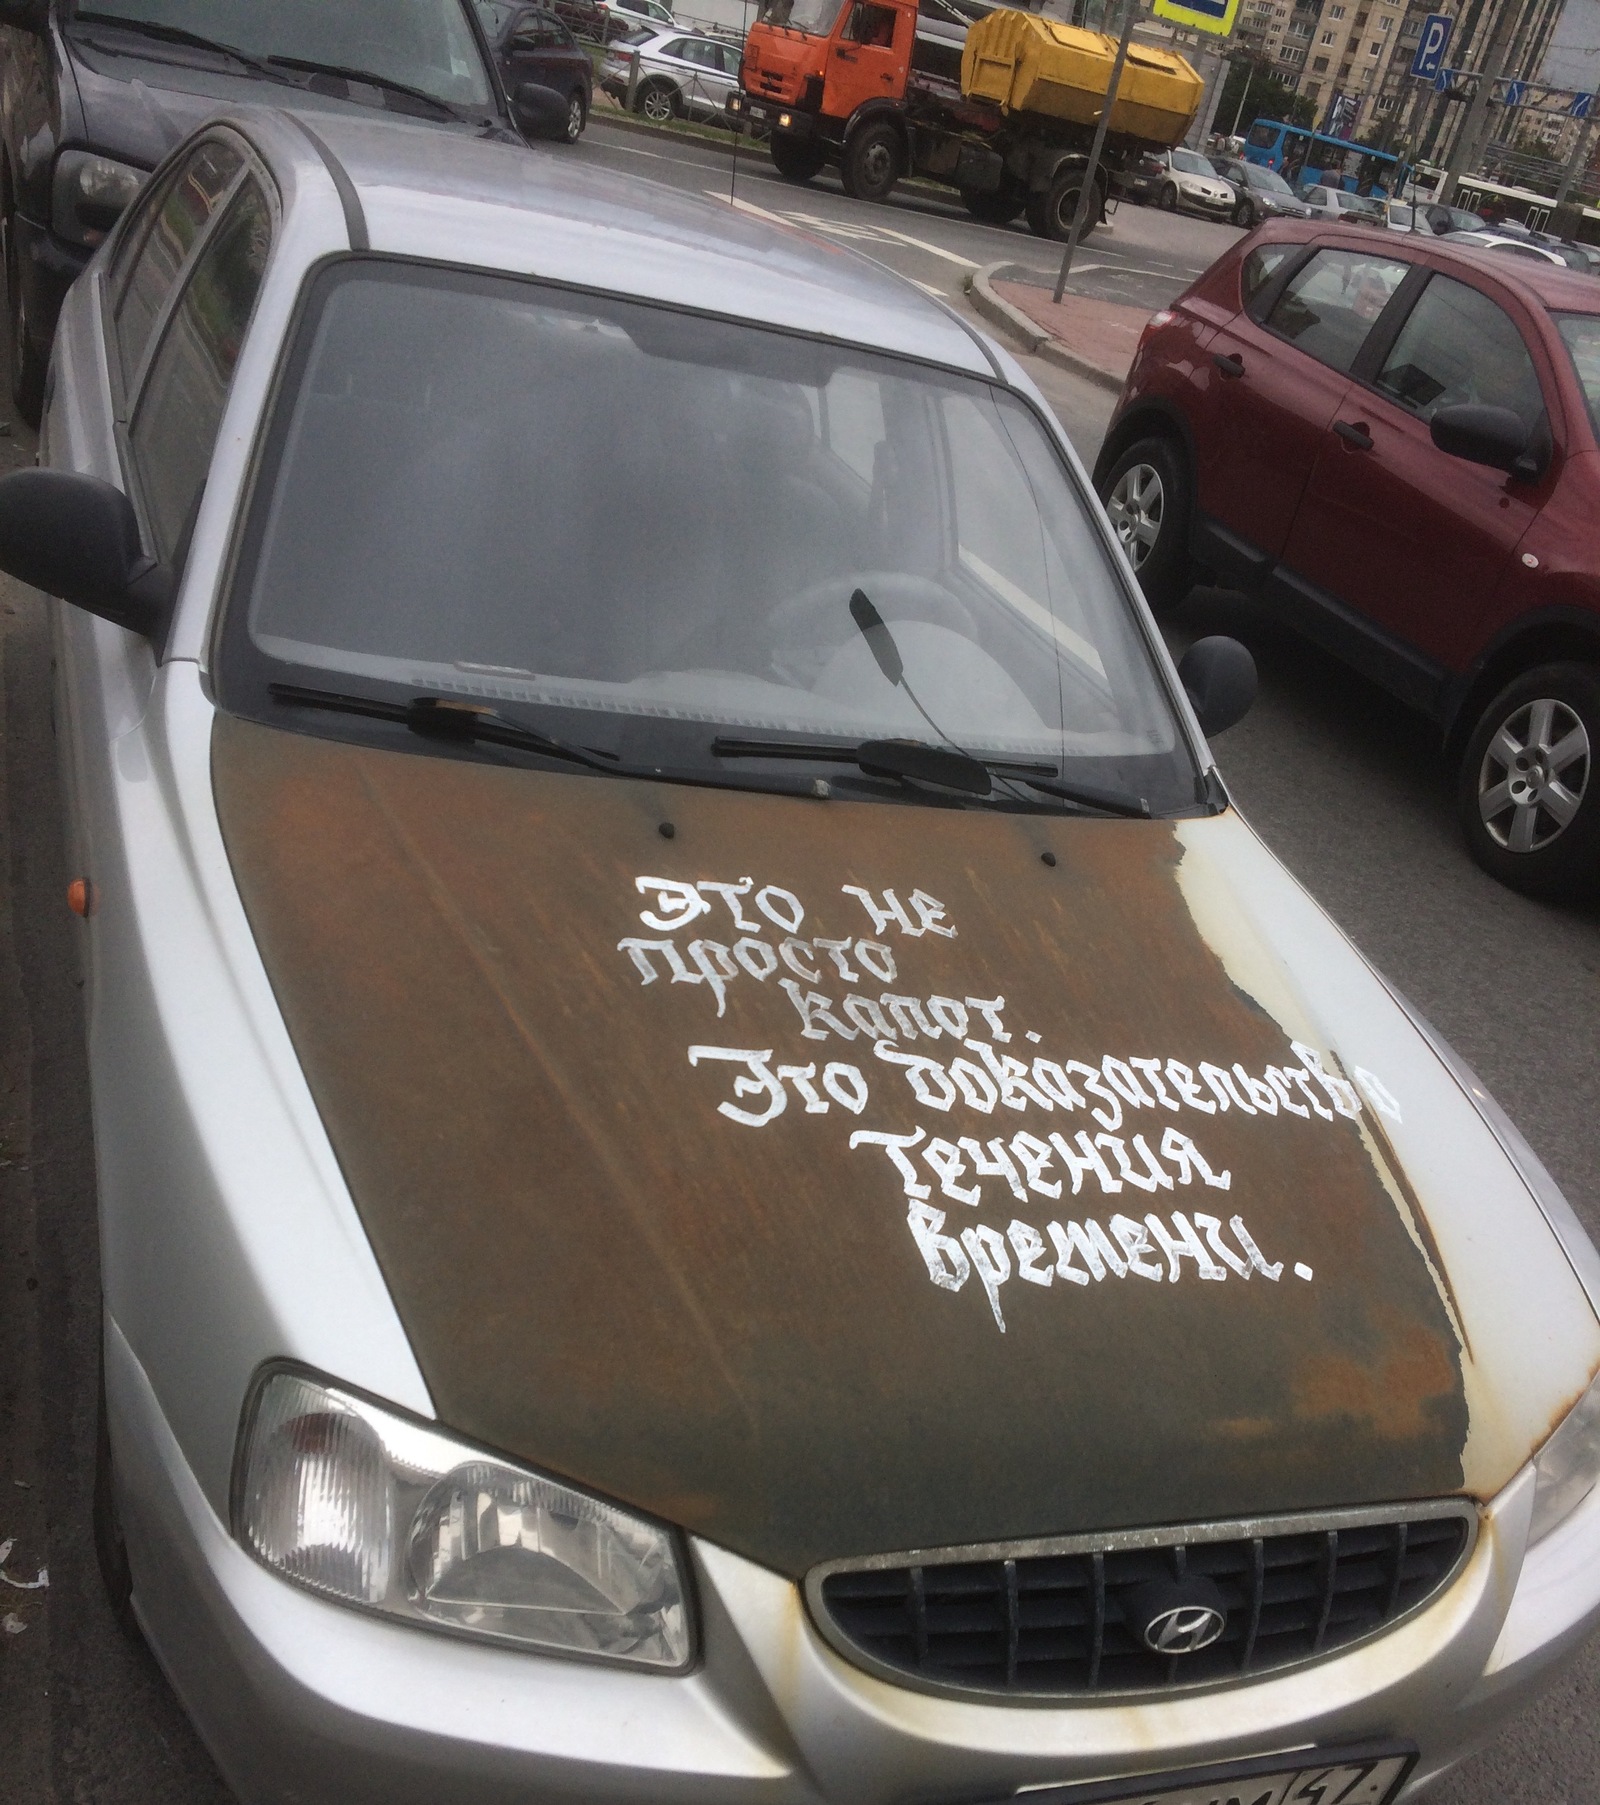 Надпись на машине бывшего. Забавные надписи на автомобилях. Интересные надписи на машину. Прикольные надписи на машинах. Смешные надписи на авто.